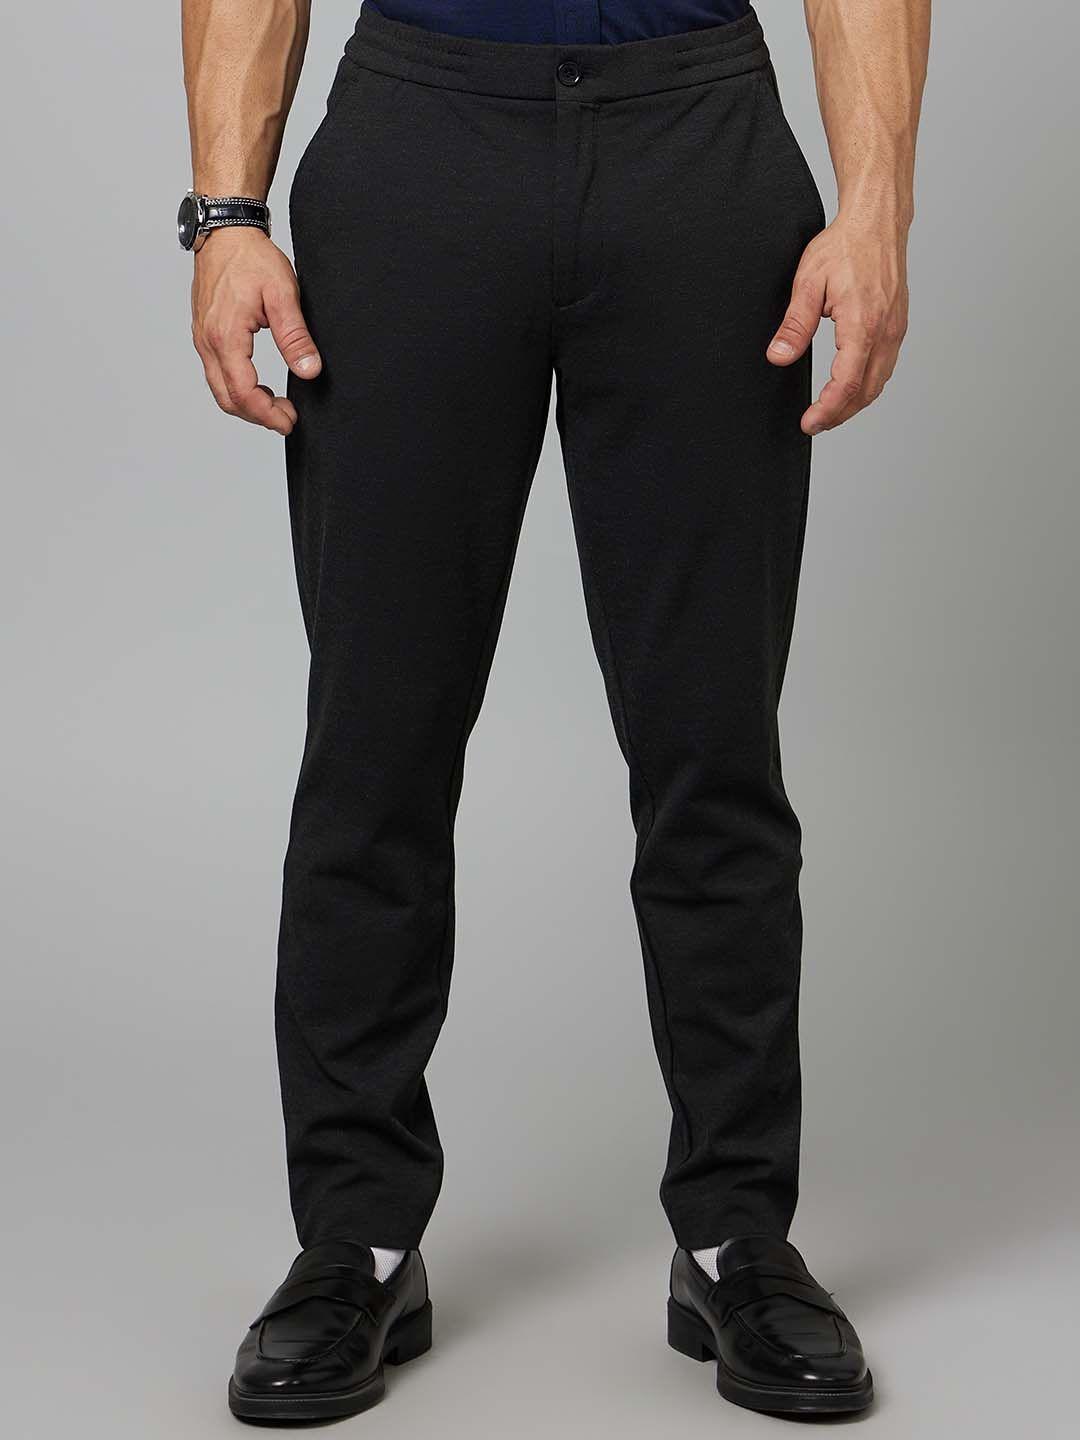 celio-men-mid-rise-plain-cotton-slim-fit-trousers